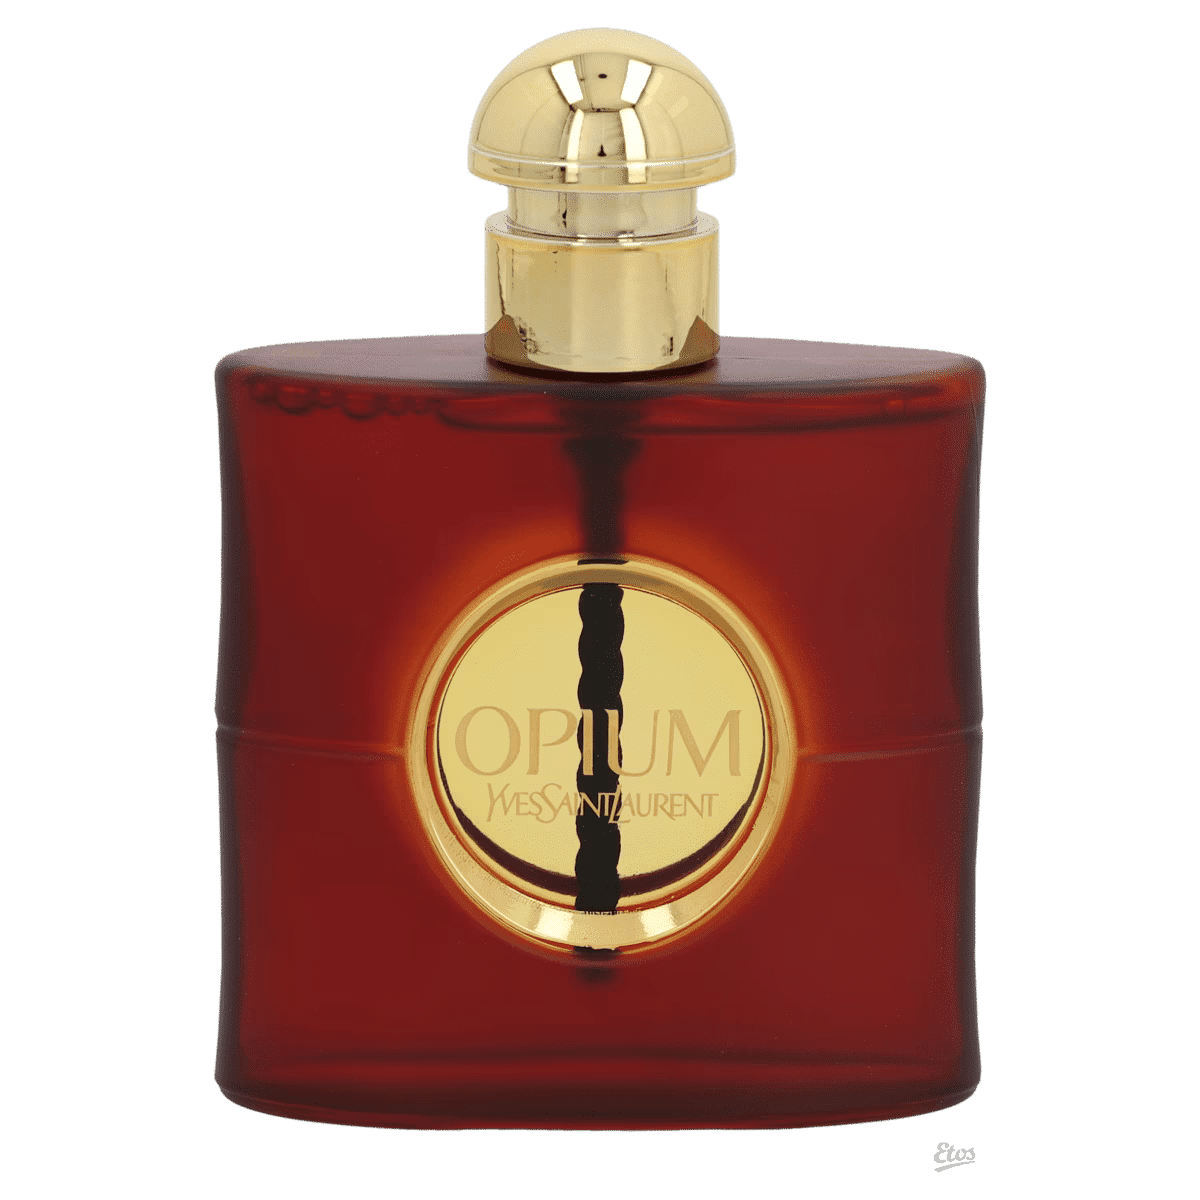 Yves Saint Laurent Opium Eau de Parfum Spray 50 ml